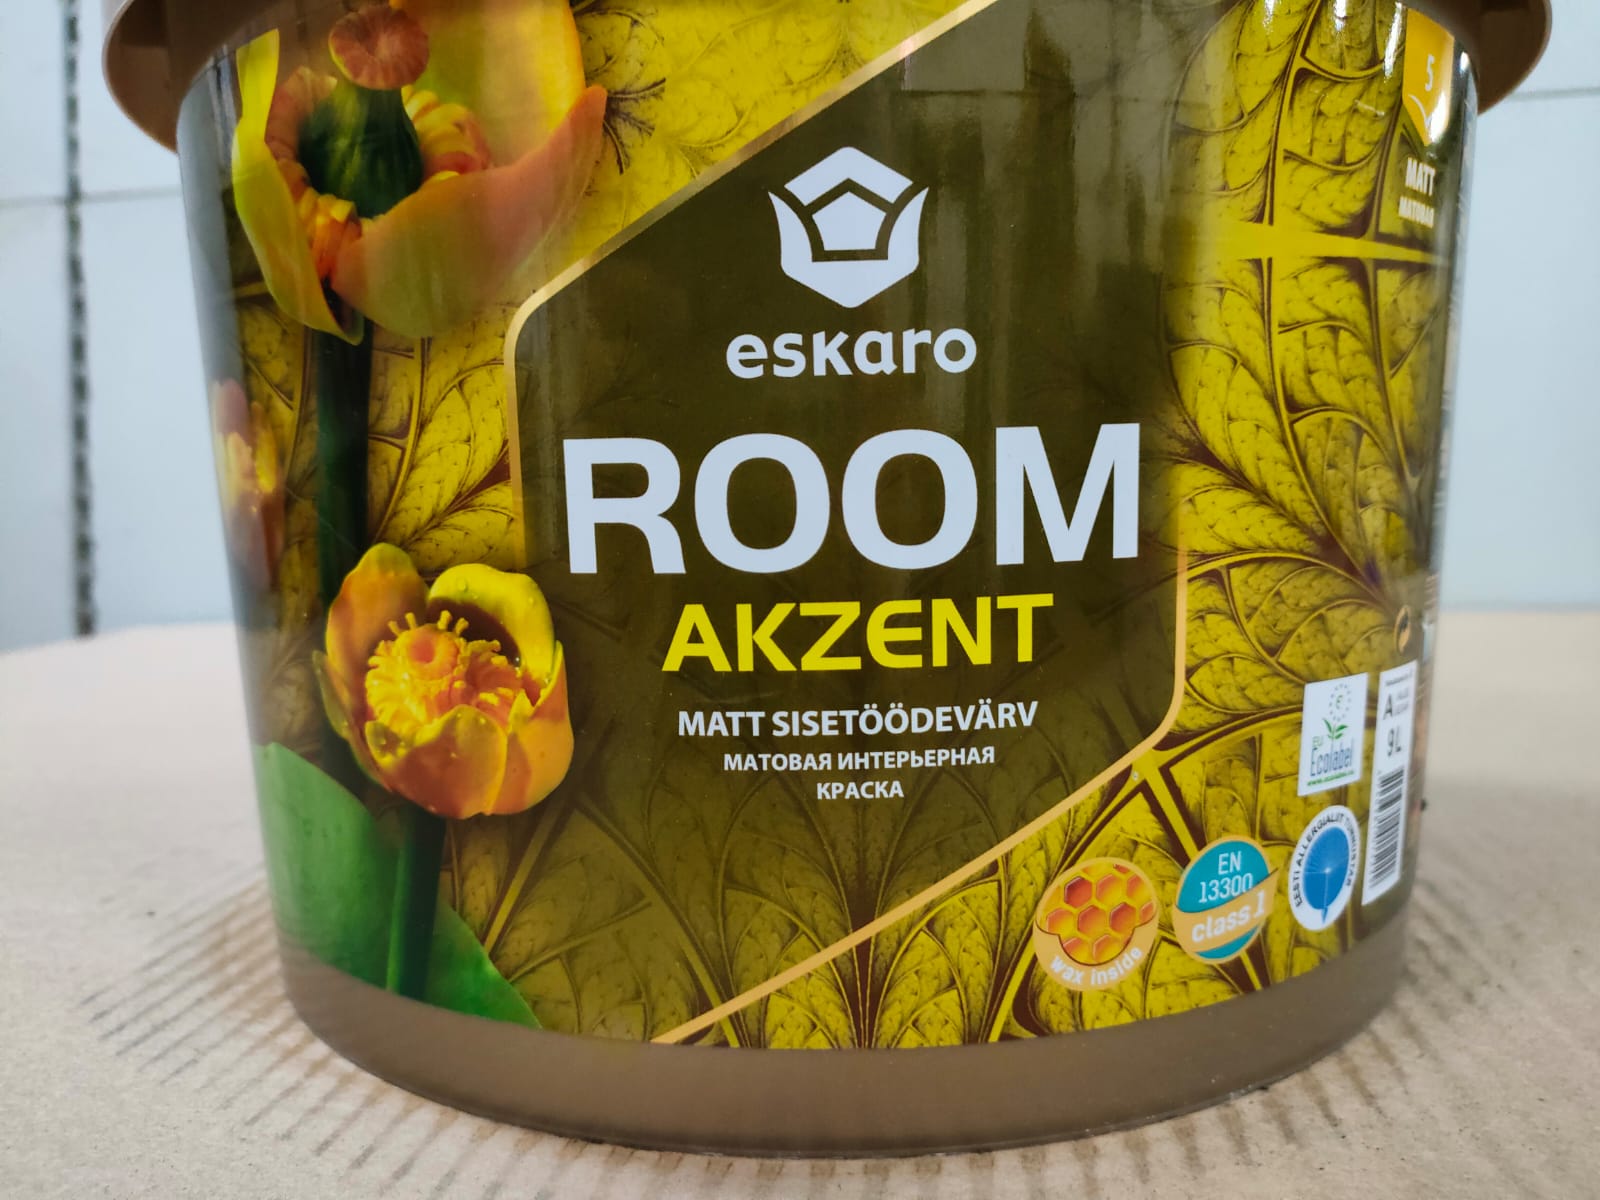 Матовая интерьерная краска Eskaro Akzent Room (База А - белая) 9 л